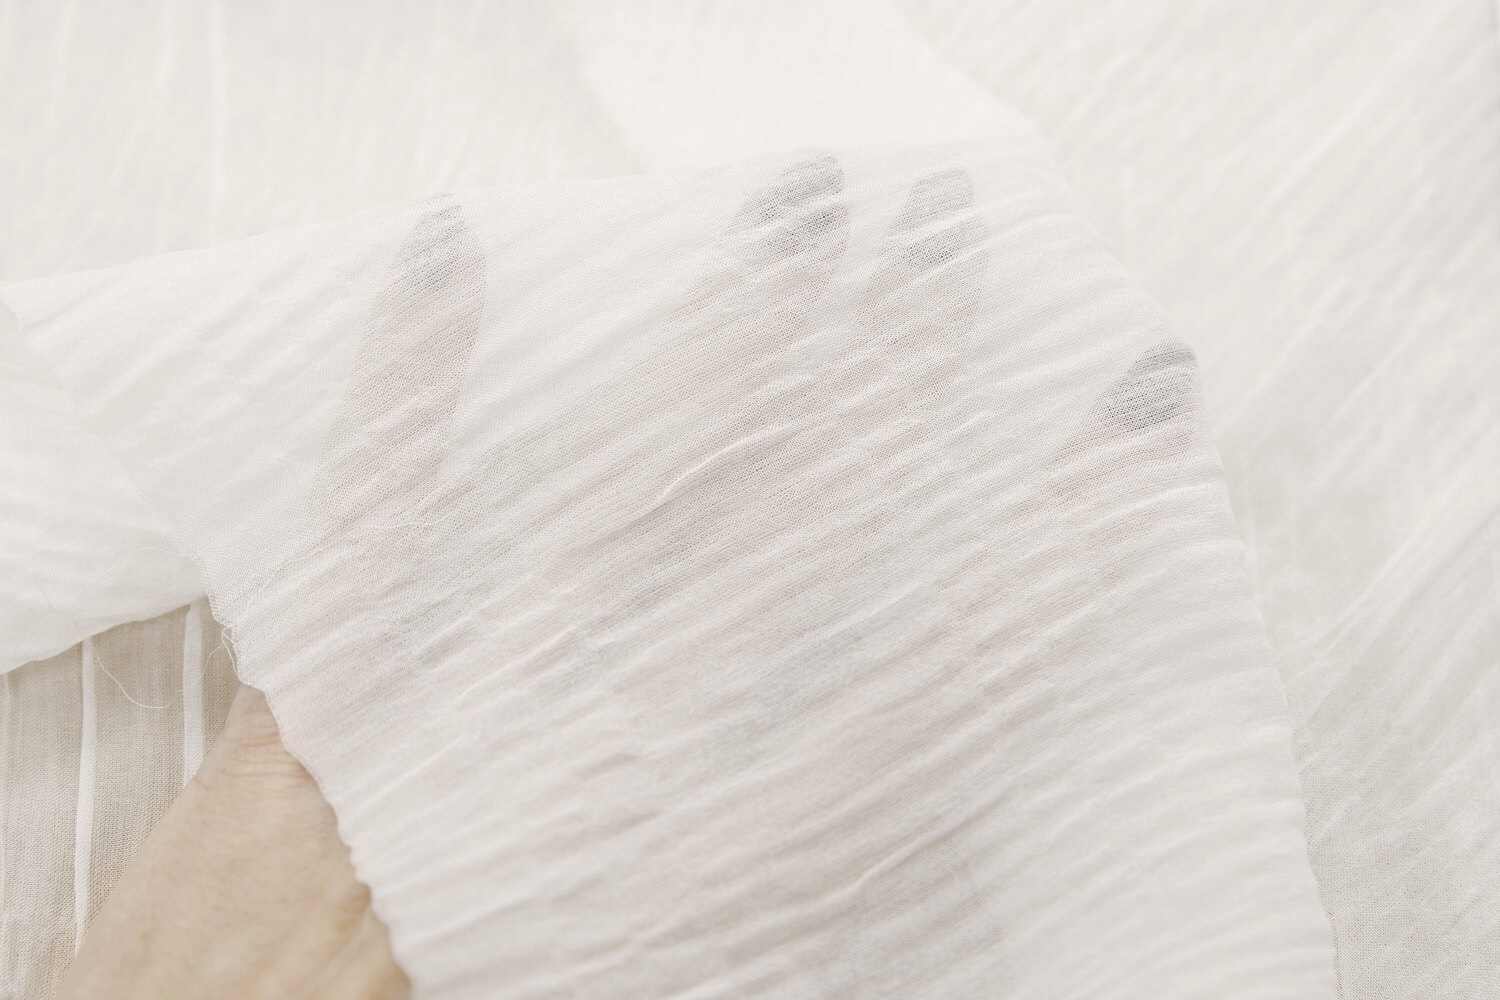 Шелковый жоржет гофре Брун-ло Кучин-ли, цвет Белый, фото 1